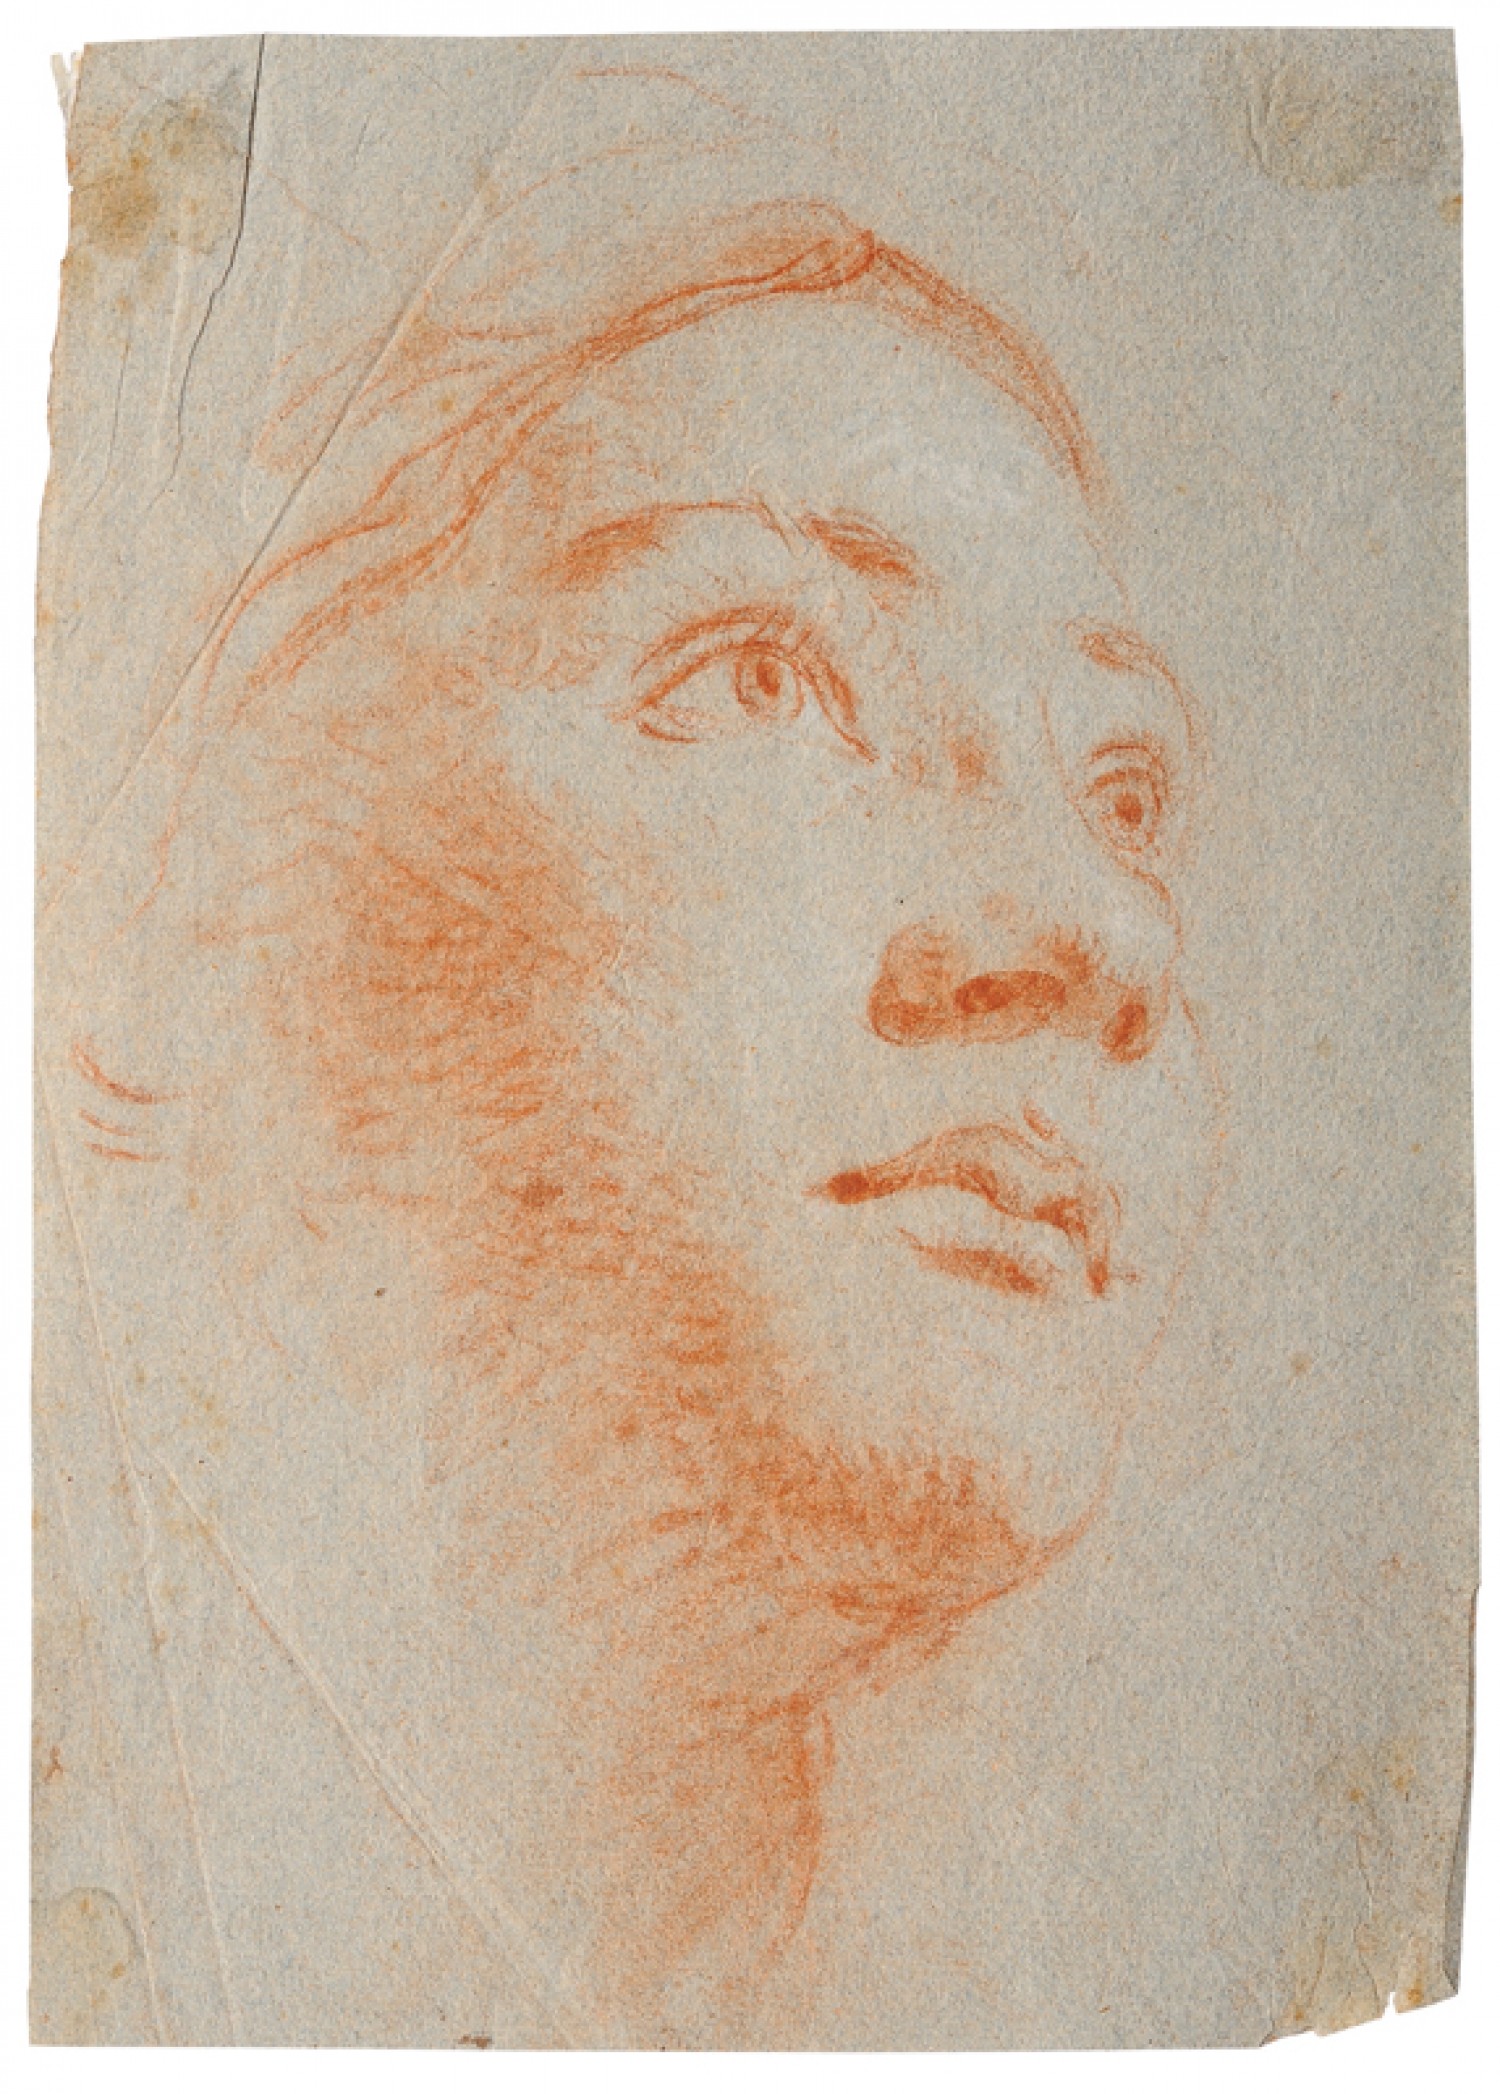  Giovanni Battista Tiepolo: Studie hlavy ženy rudka, 22 x 15,5 cm cena: 1 O54 000 Kč Arcimboldo 28. 5. 2011